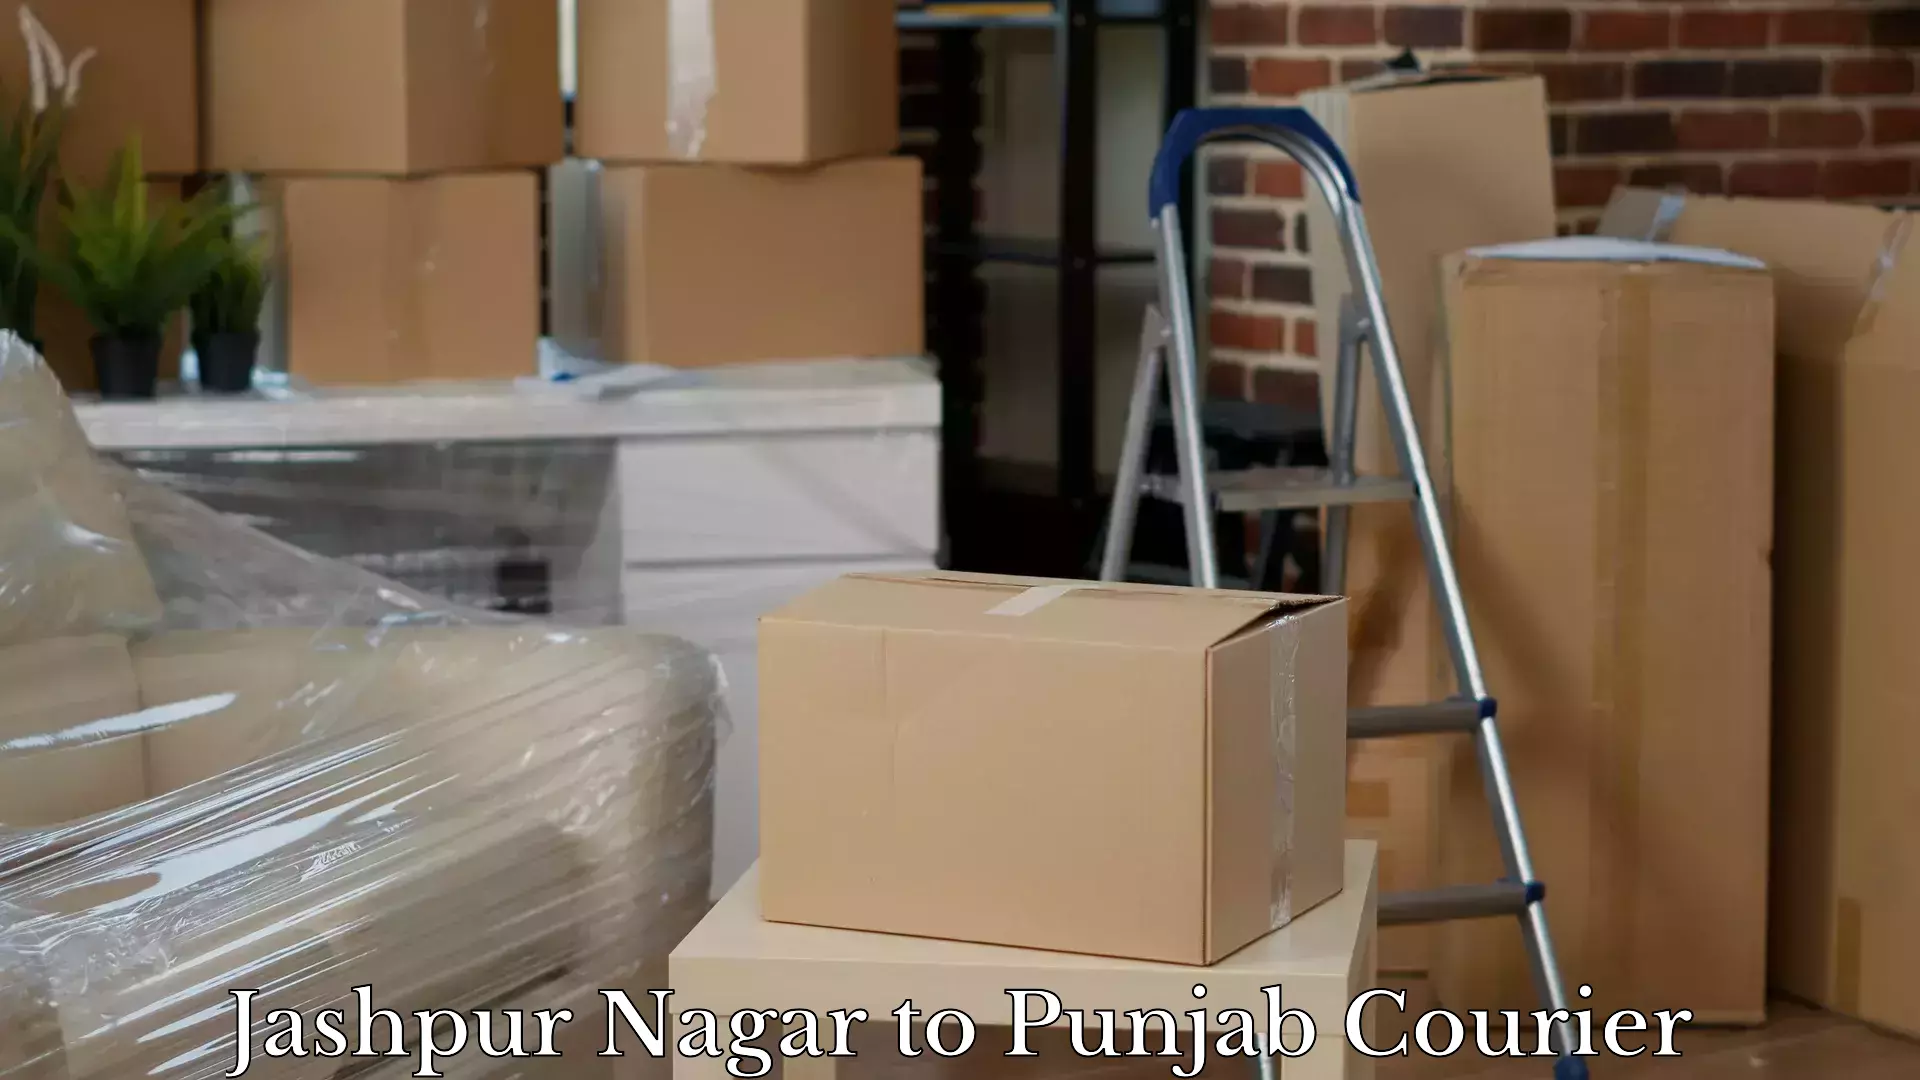 Luggage transport schedule Jashpur Nagar to Punjab